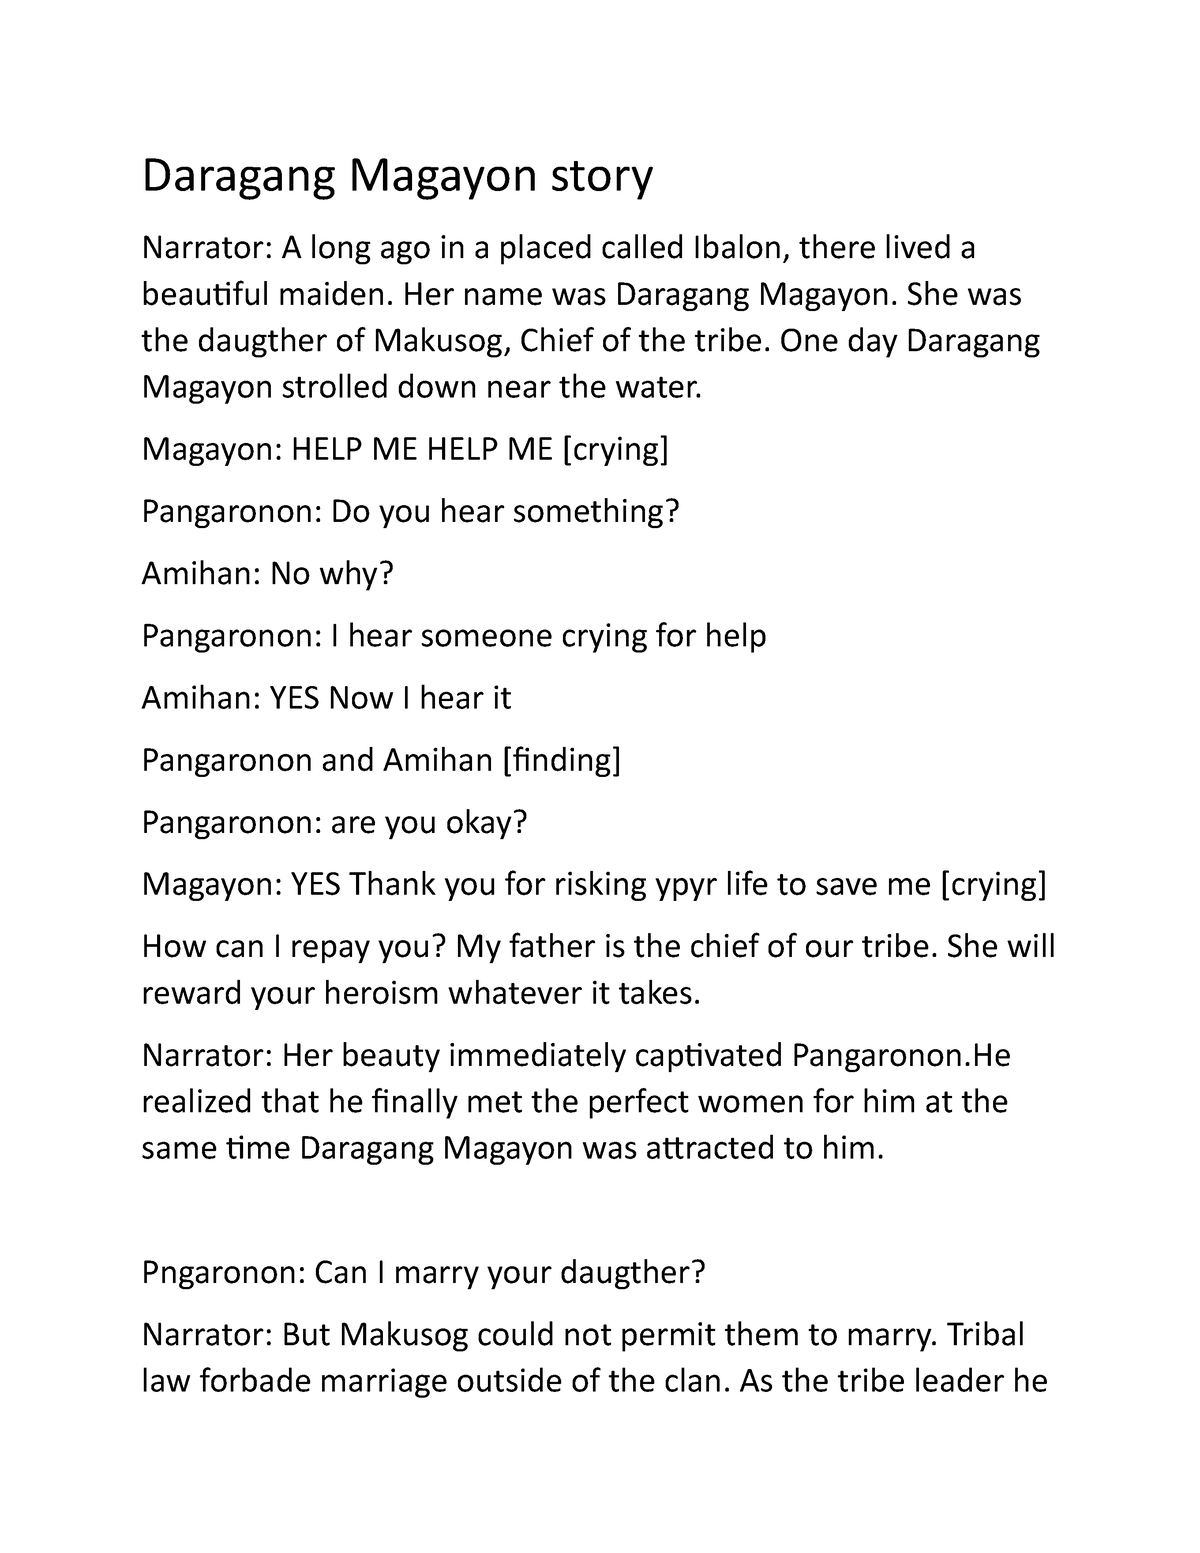 three sentence summary of daragang magayon